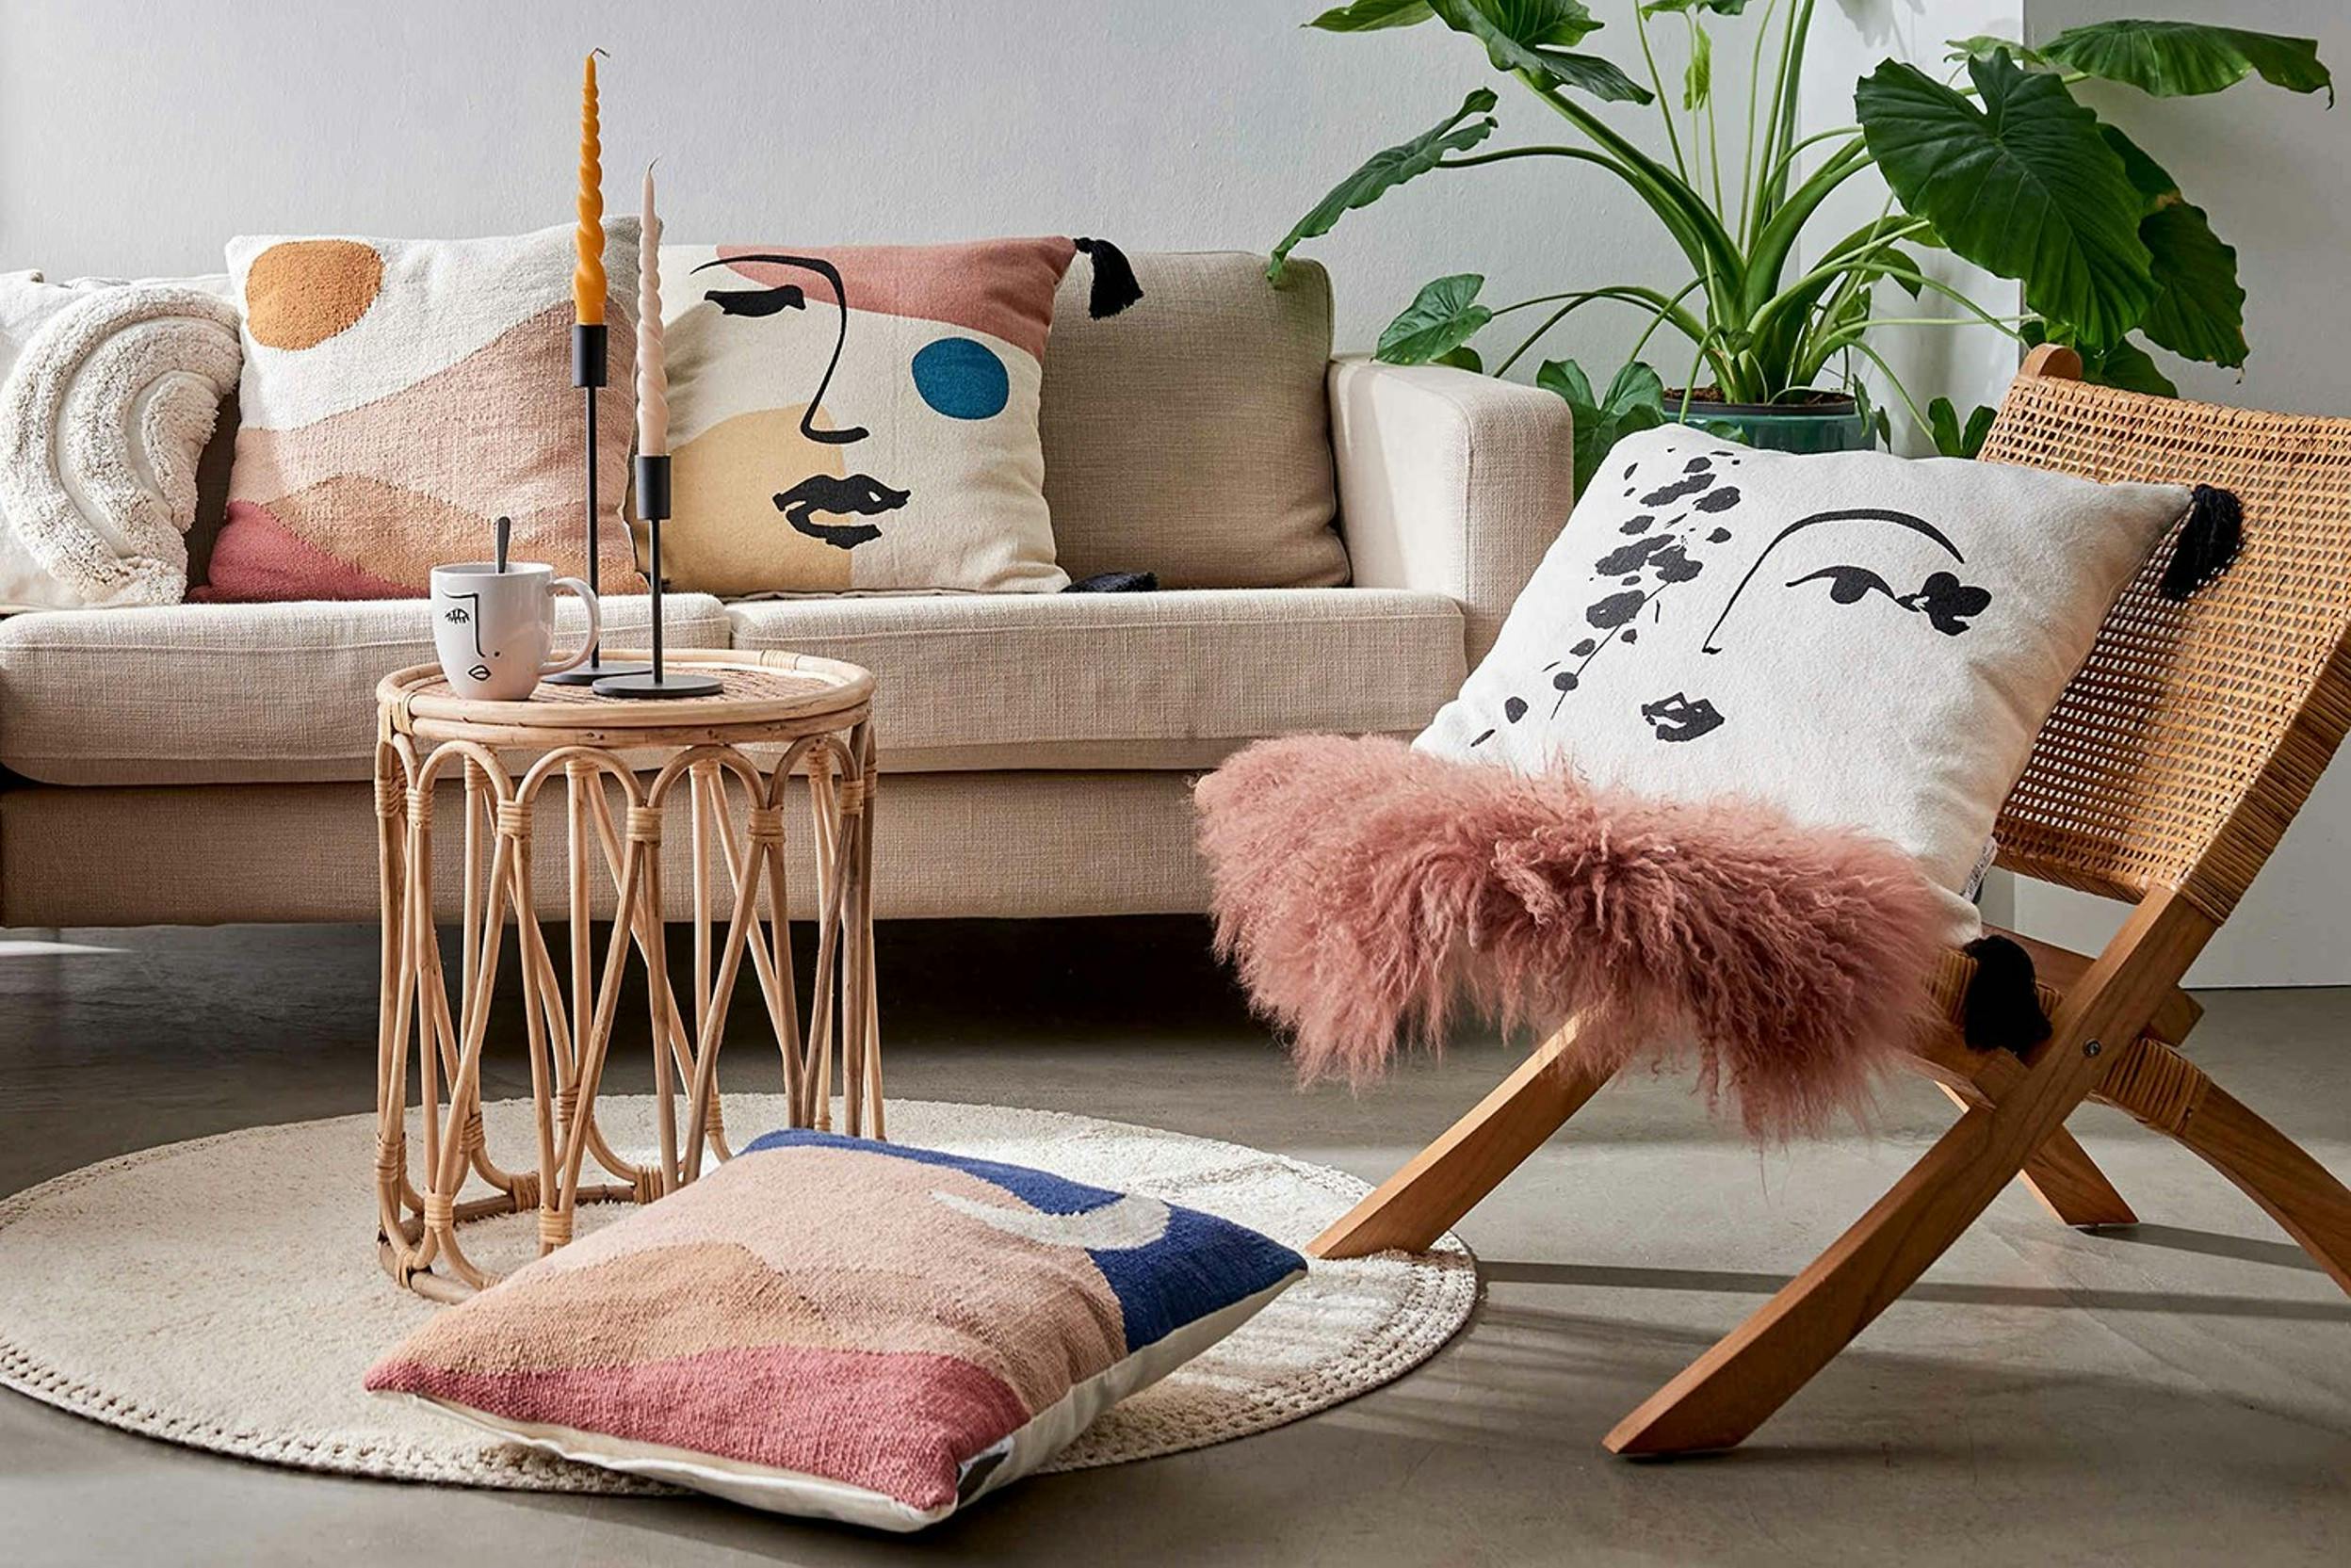 die schönsten deko-ideen fürs wohnzimmer | home24